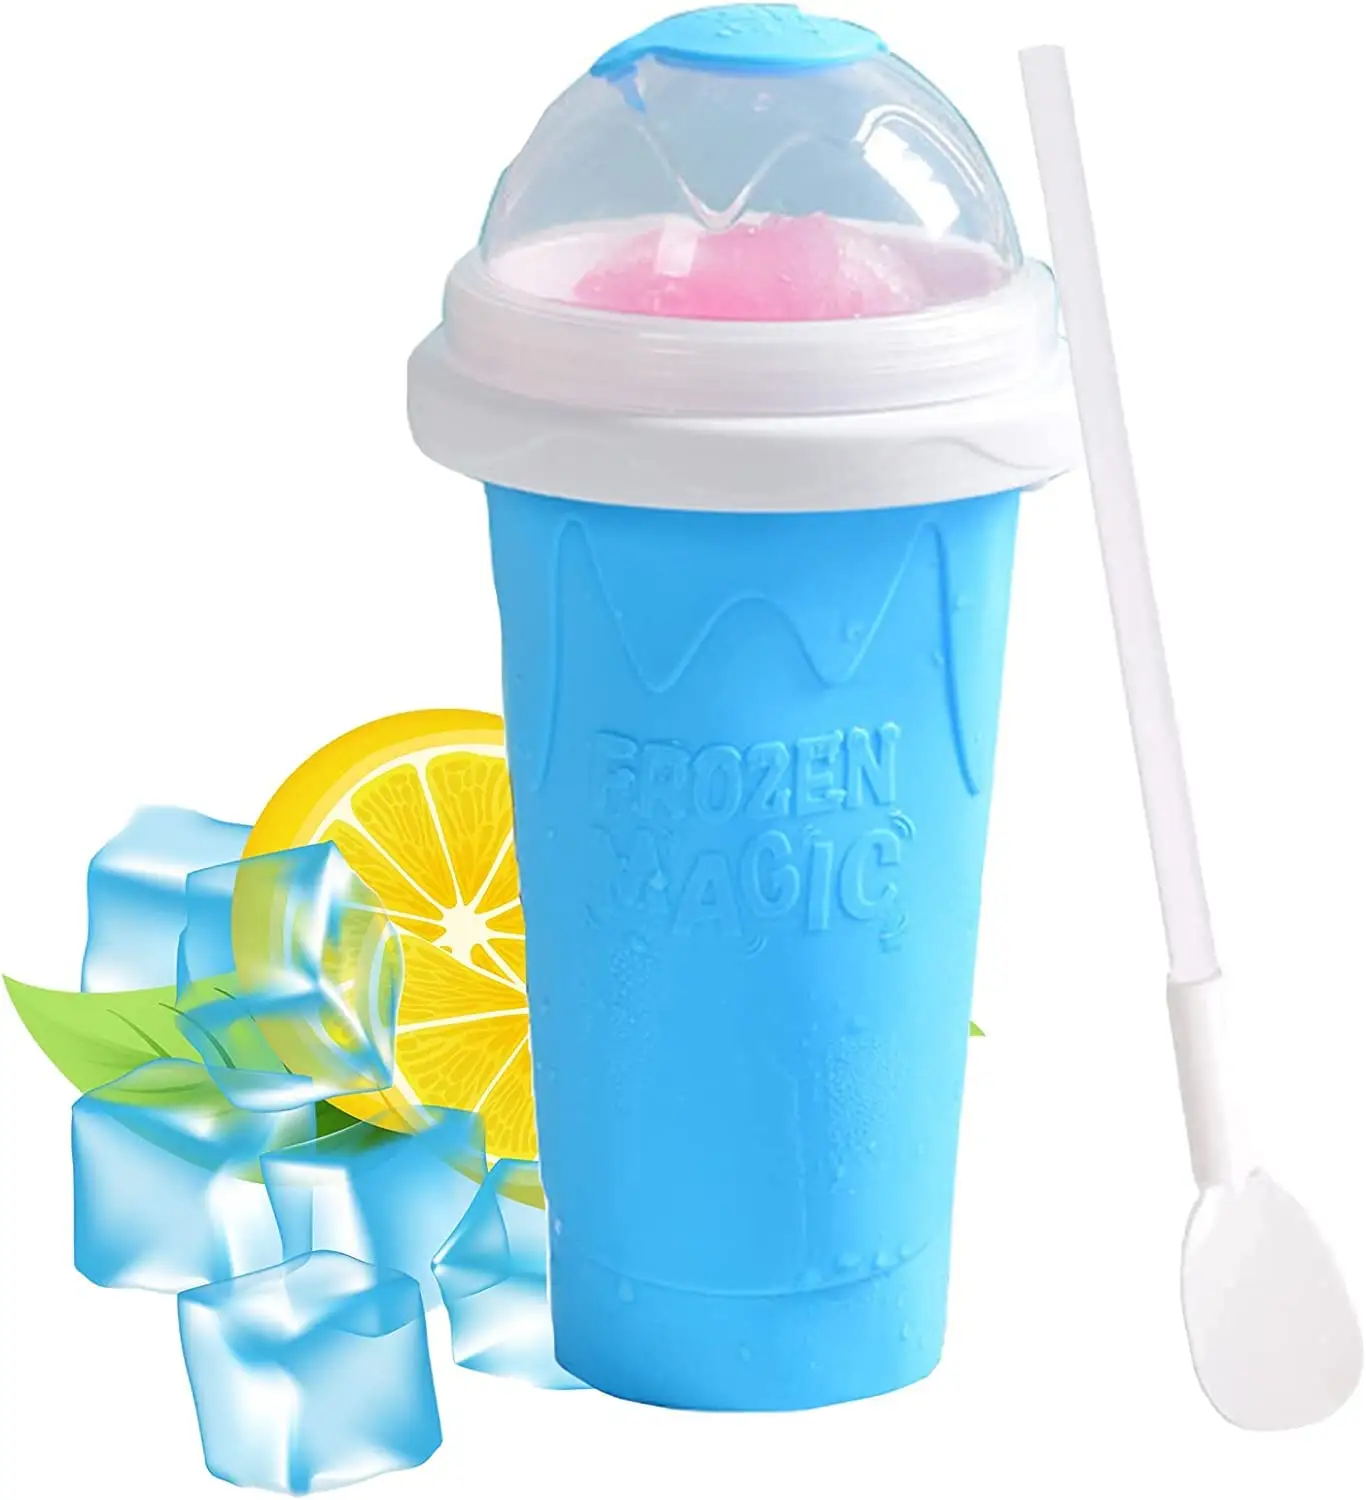 Hot Sales Eco-Friendly Frozen Magic Slush Cup Slushie Maker Cup Magic Quick Frozen Smoothies Squeeze Cup